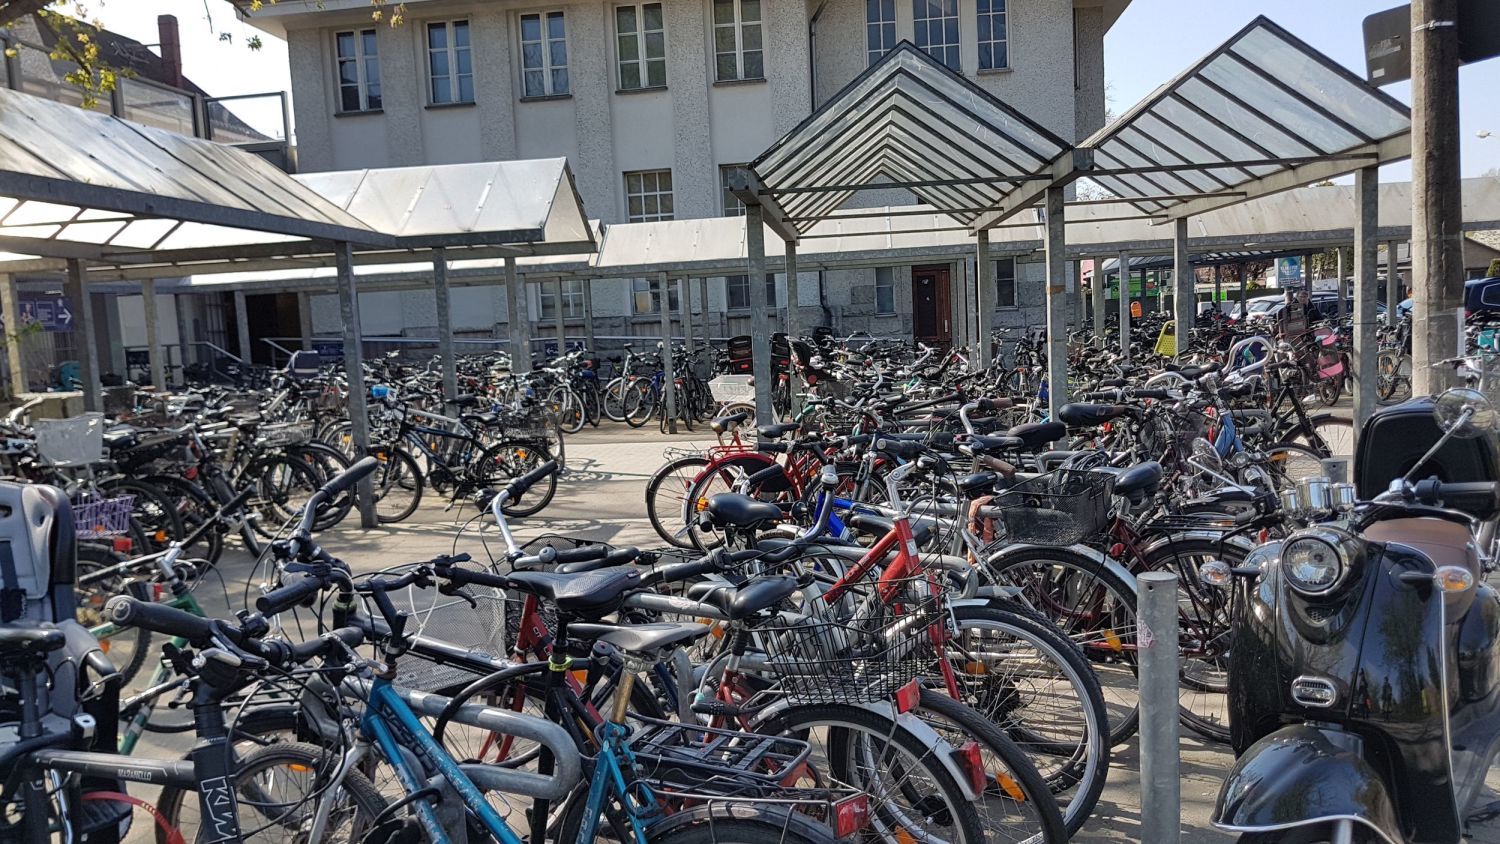 Zukünftig wird es am S-Bahnhof Blankenburg mehr Fahrradstellplätze geben